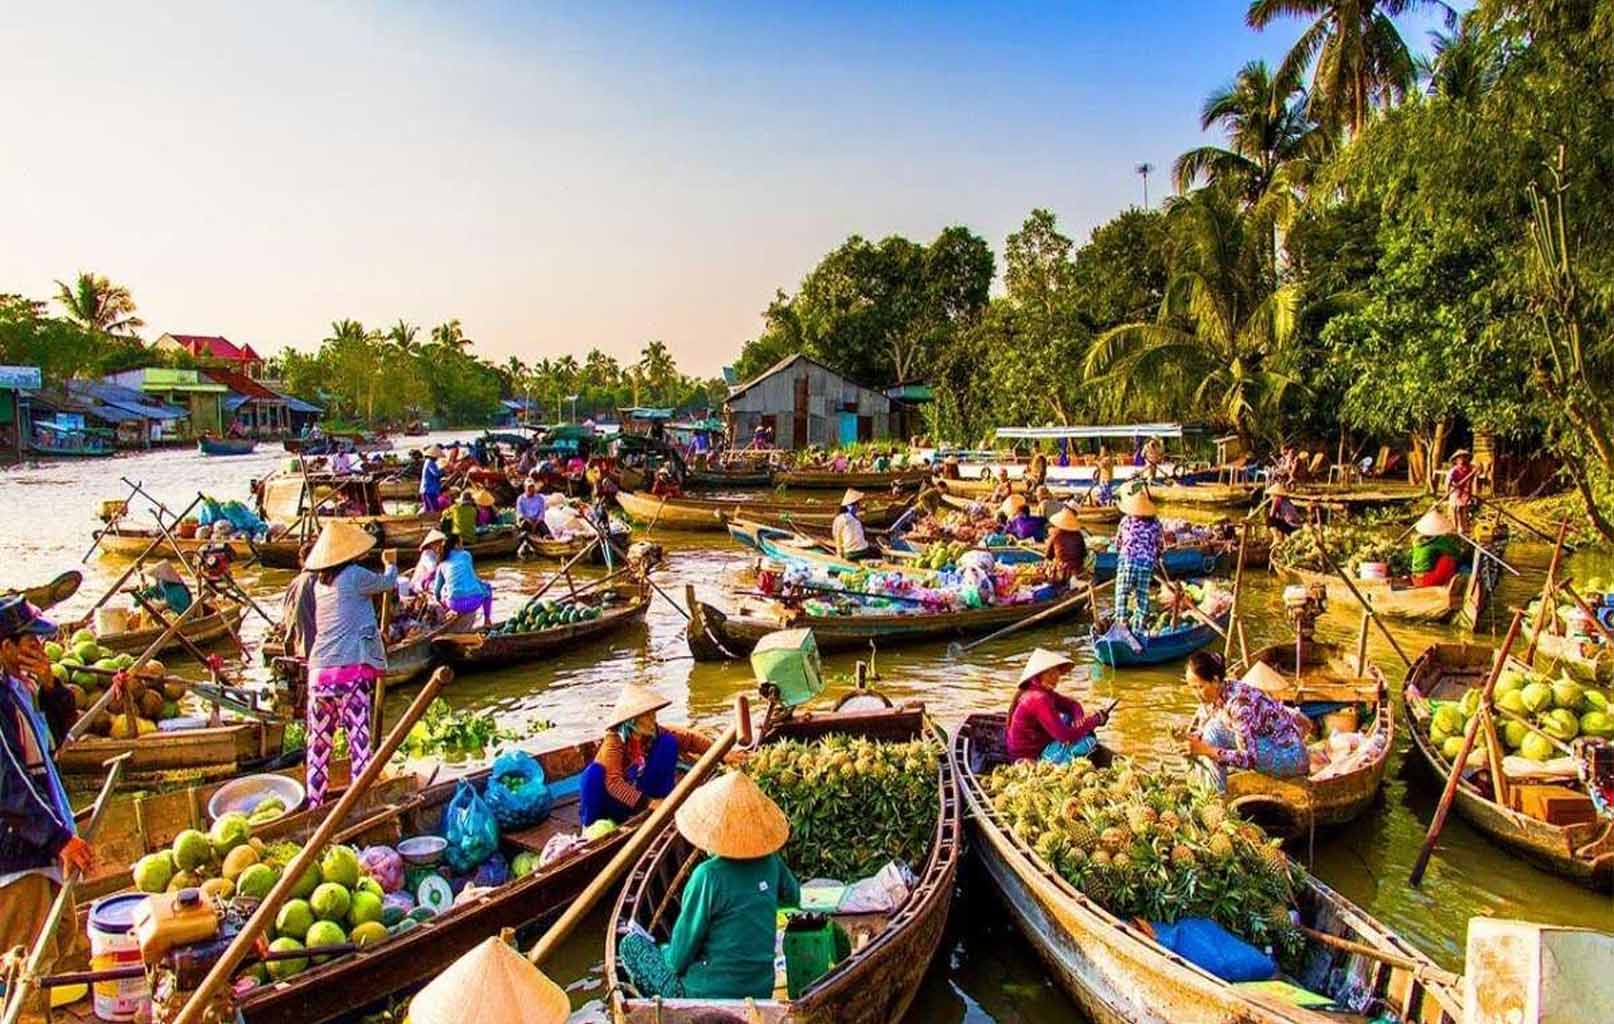 Du lịch Miền Tây - Du lịch Châu Đốc - Hà Tiên - Cần Thơ từ Sài Gòn giá tốt